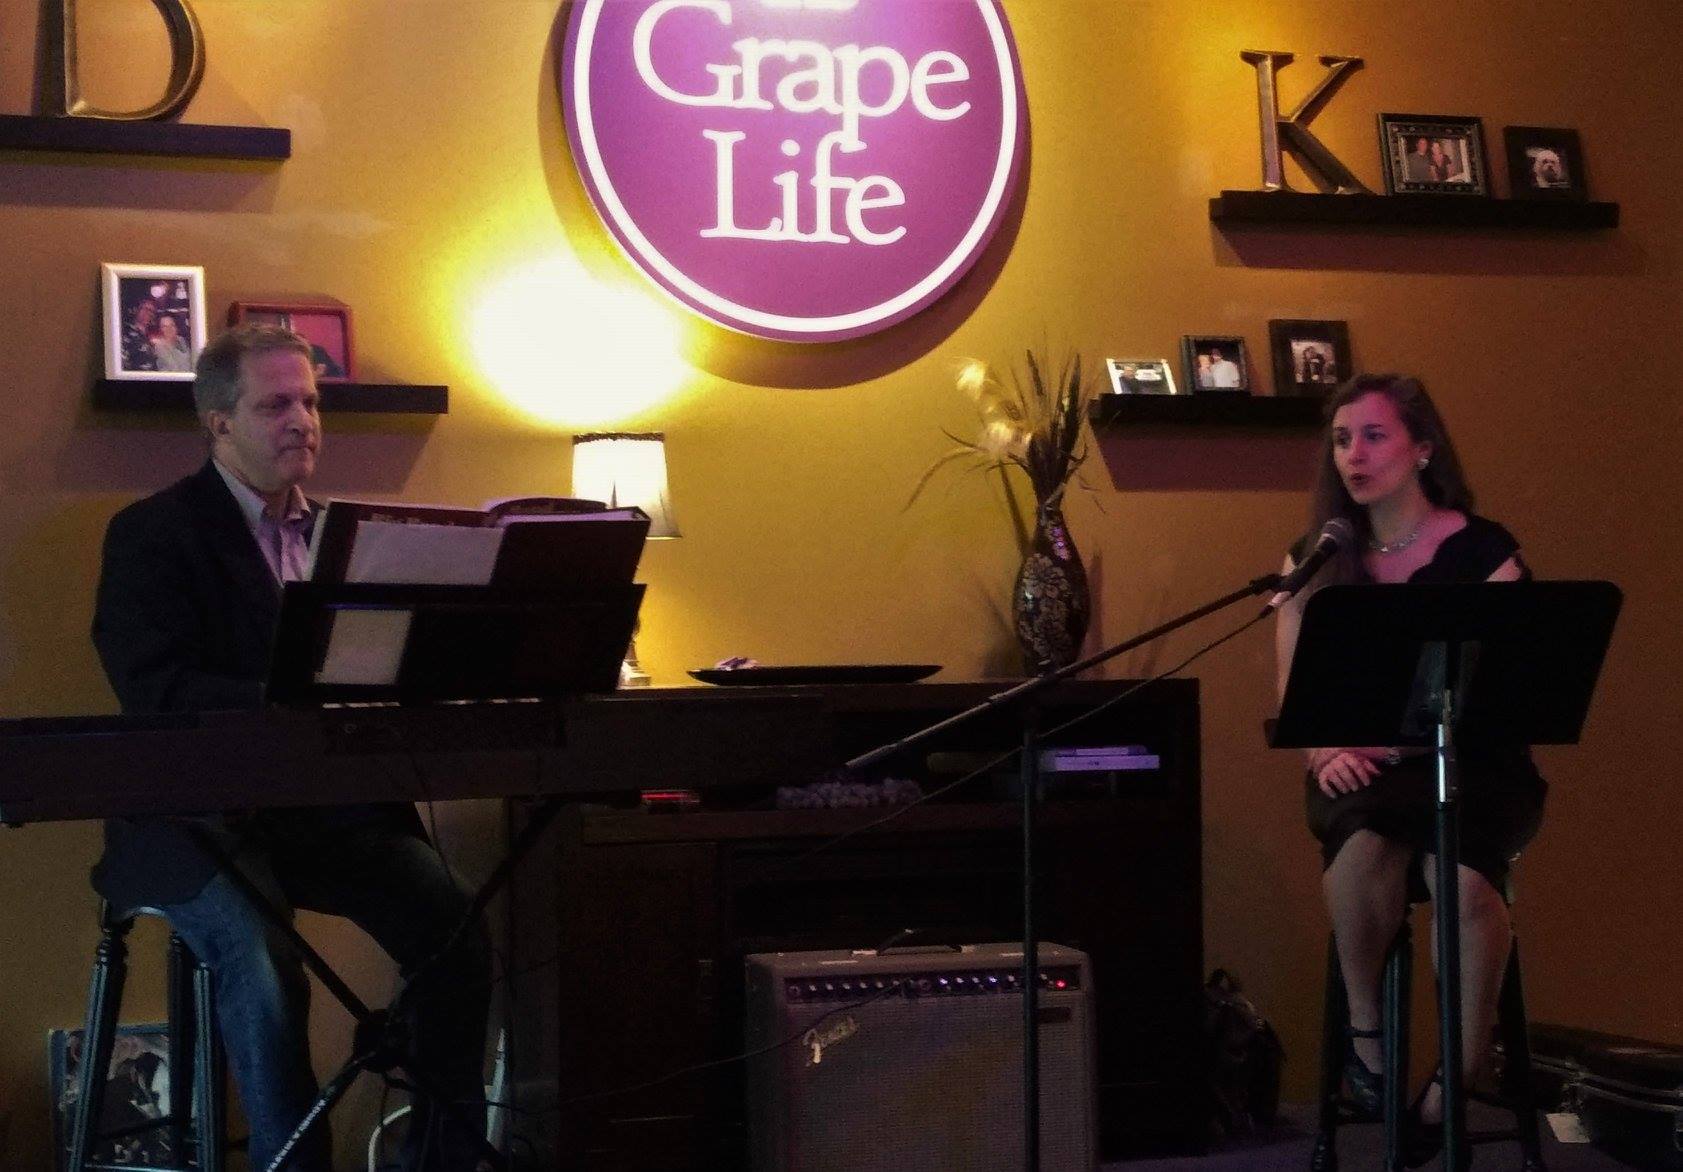 Jonathan Turner and Korah Winn performing at Grape Life in August 2018.